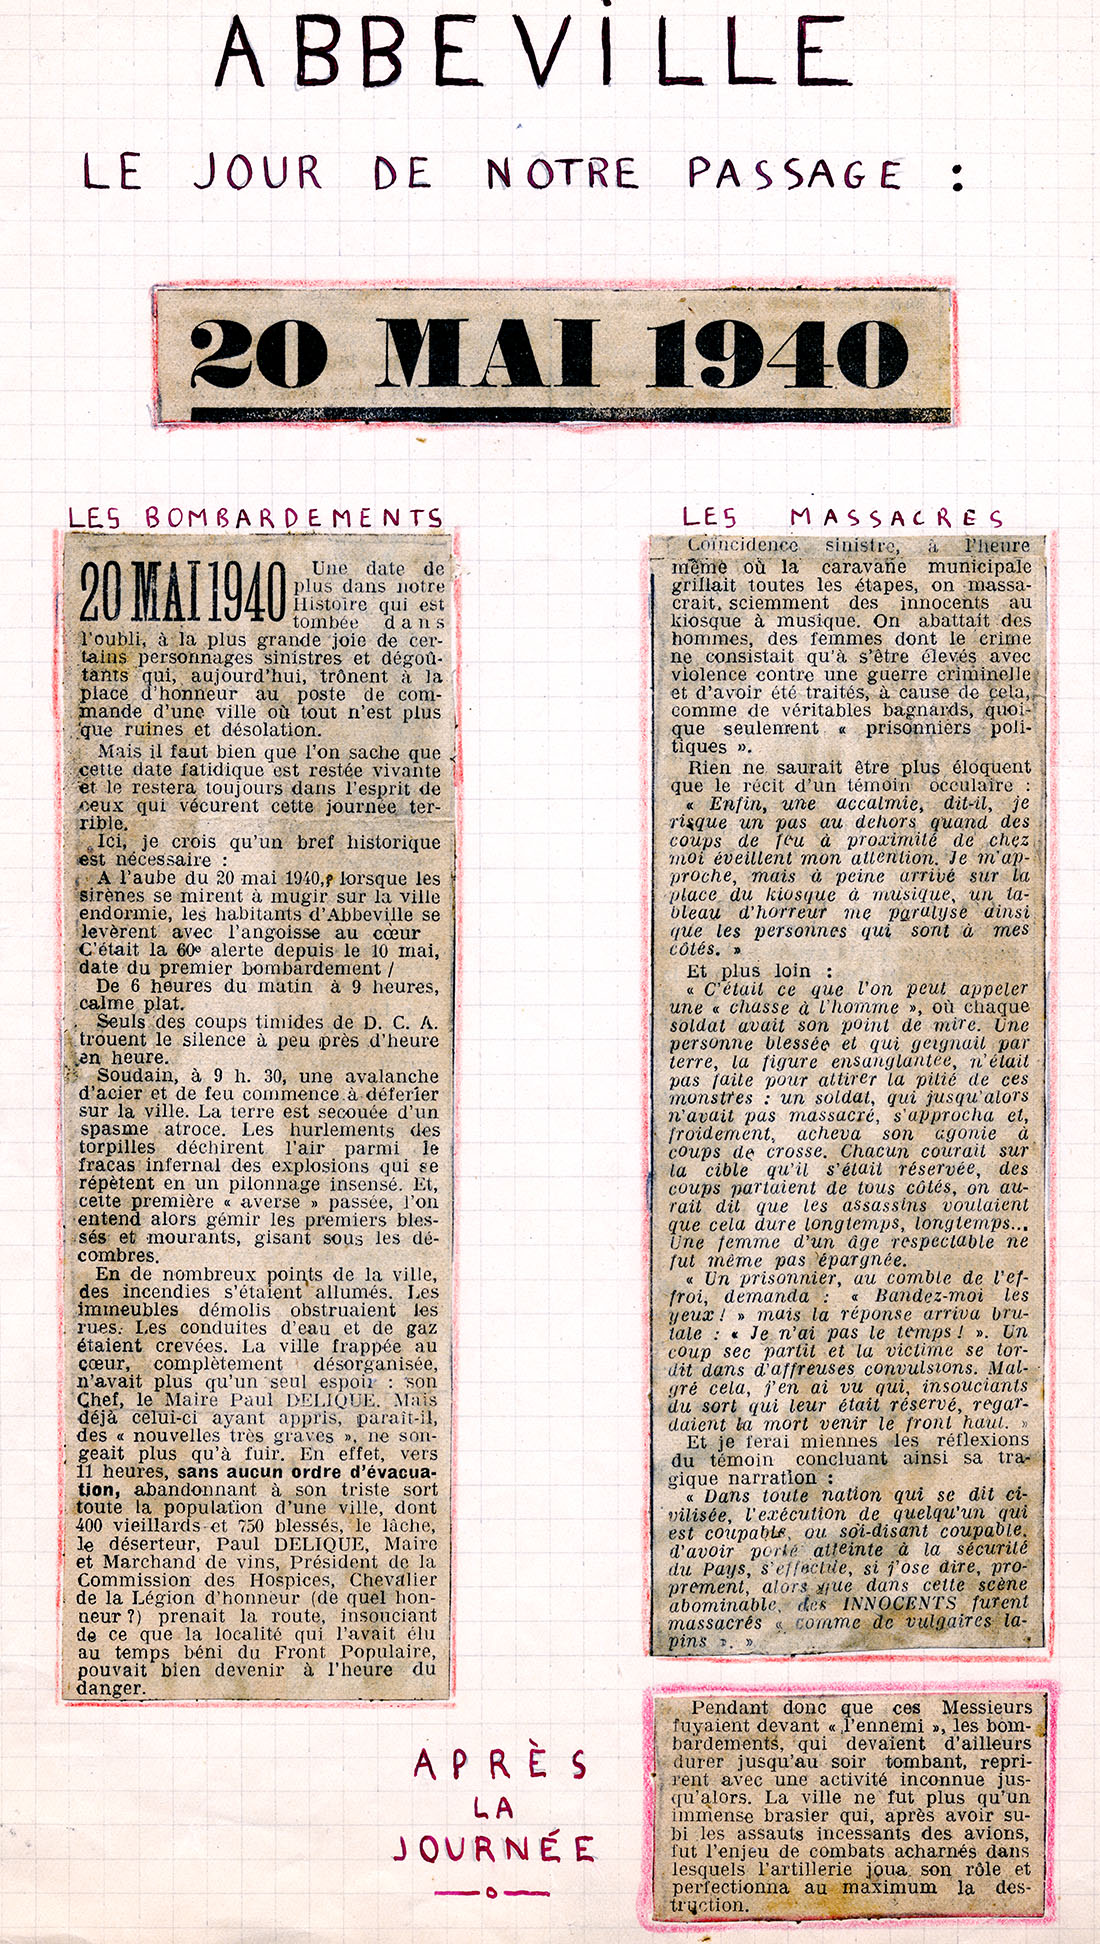 Coupures de presse relatant la prise d'Abbeville par les Allemands le 20 mai 1940.